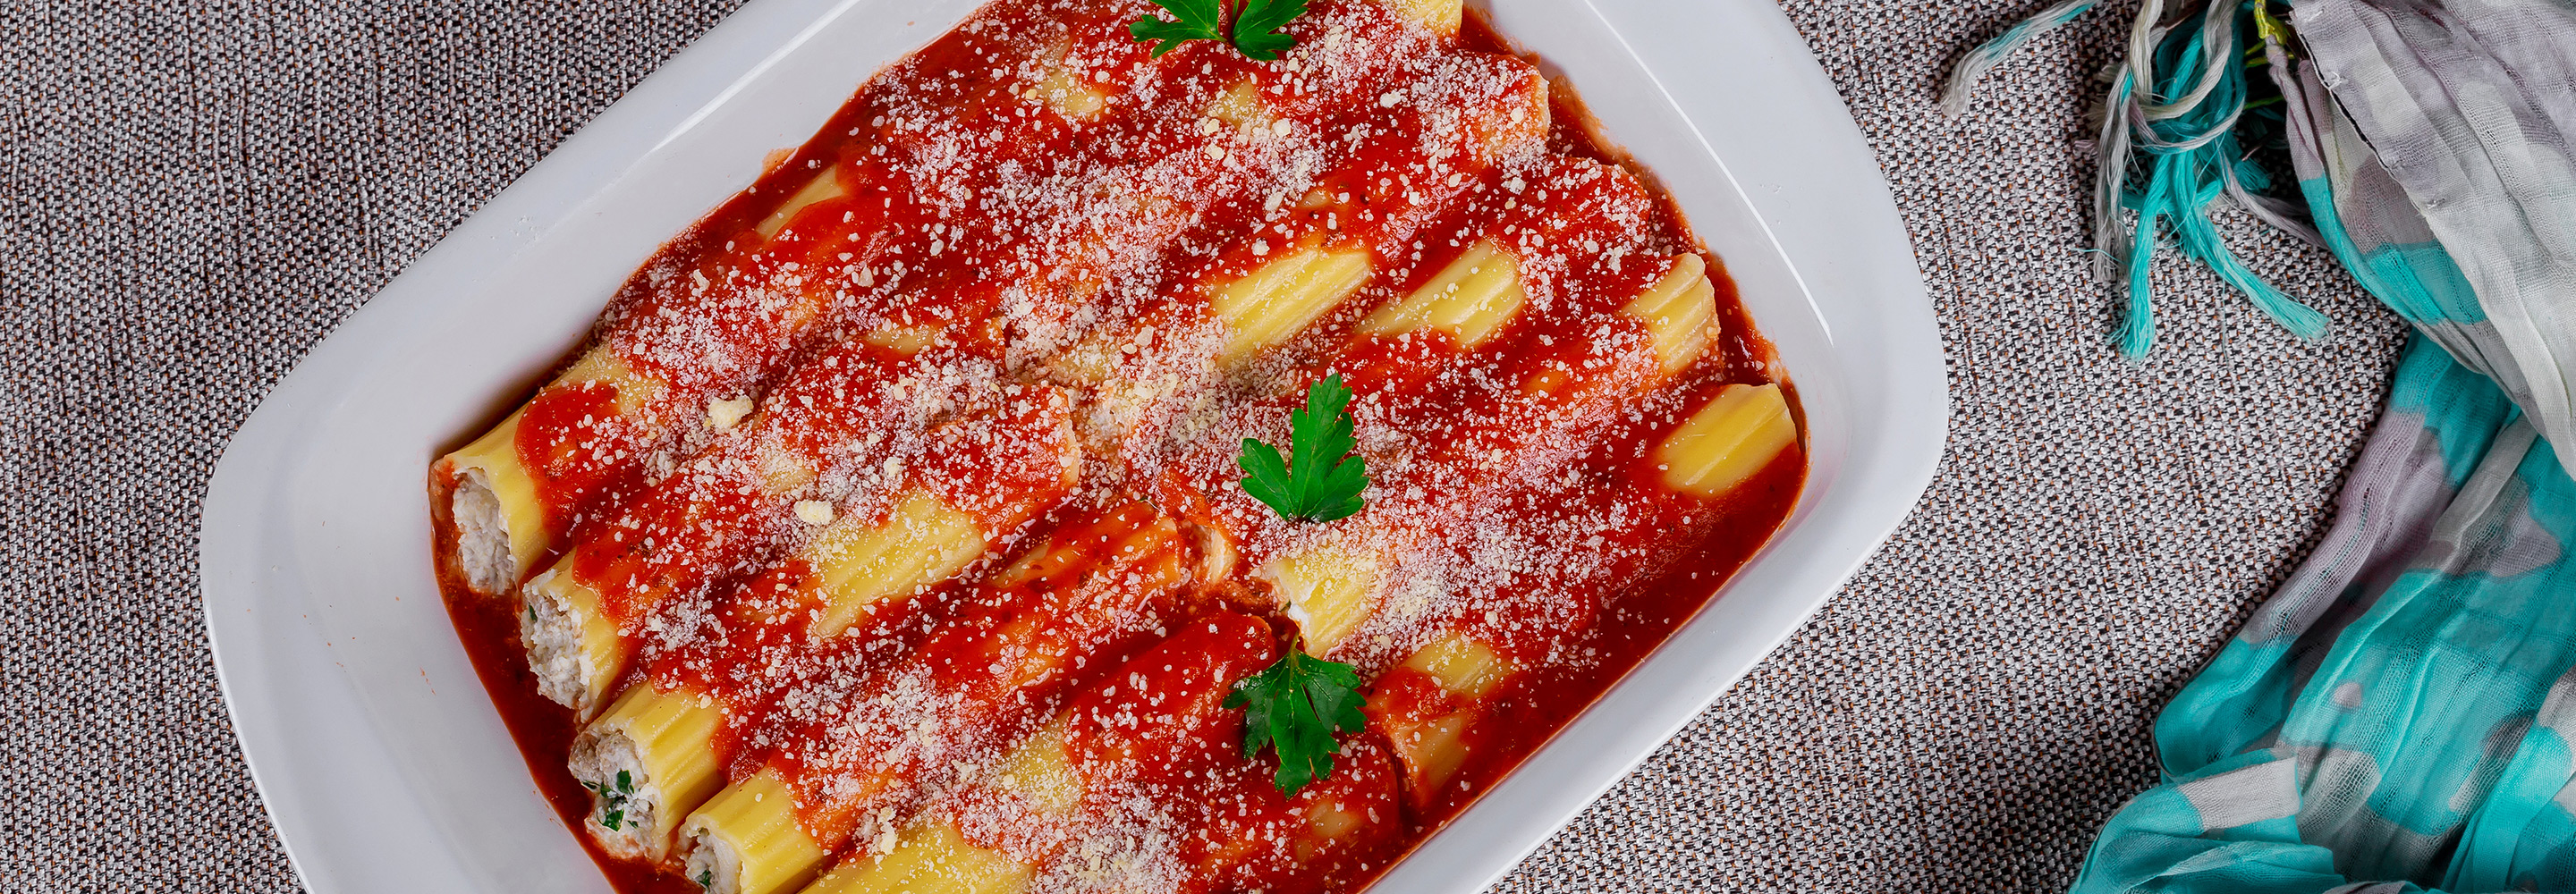 Cannelloni z ricottą, szynką, pomidorami i parmezanem - Galbani – od ponad 130 lat dostarczamy najlepsze włoskie smaki na talerze całego świata